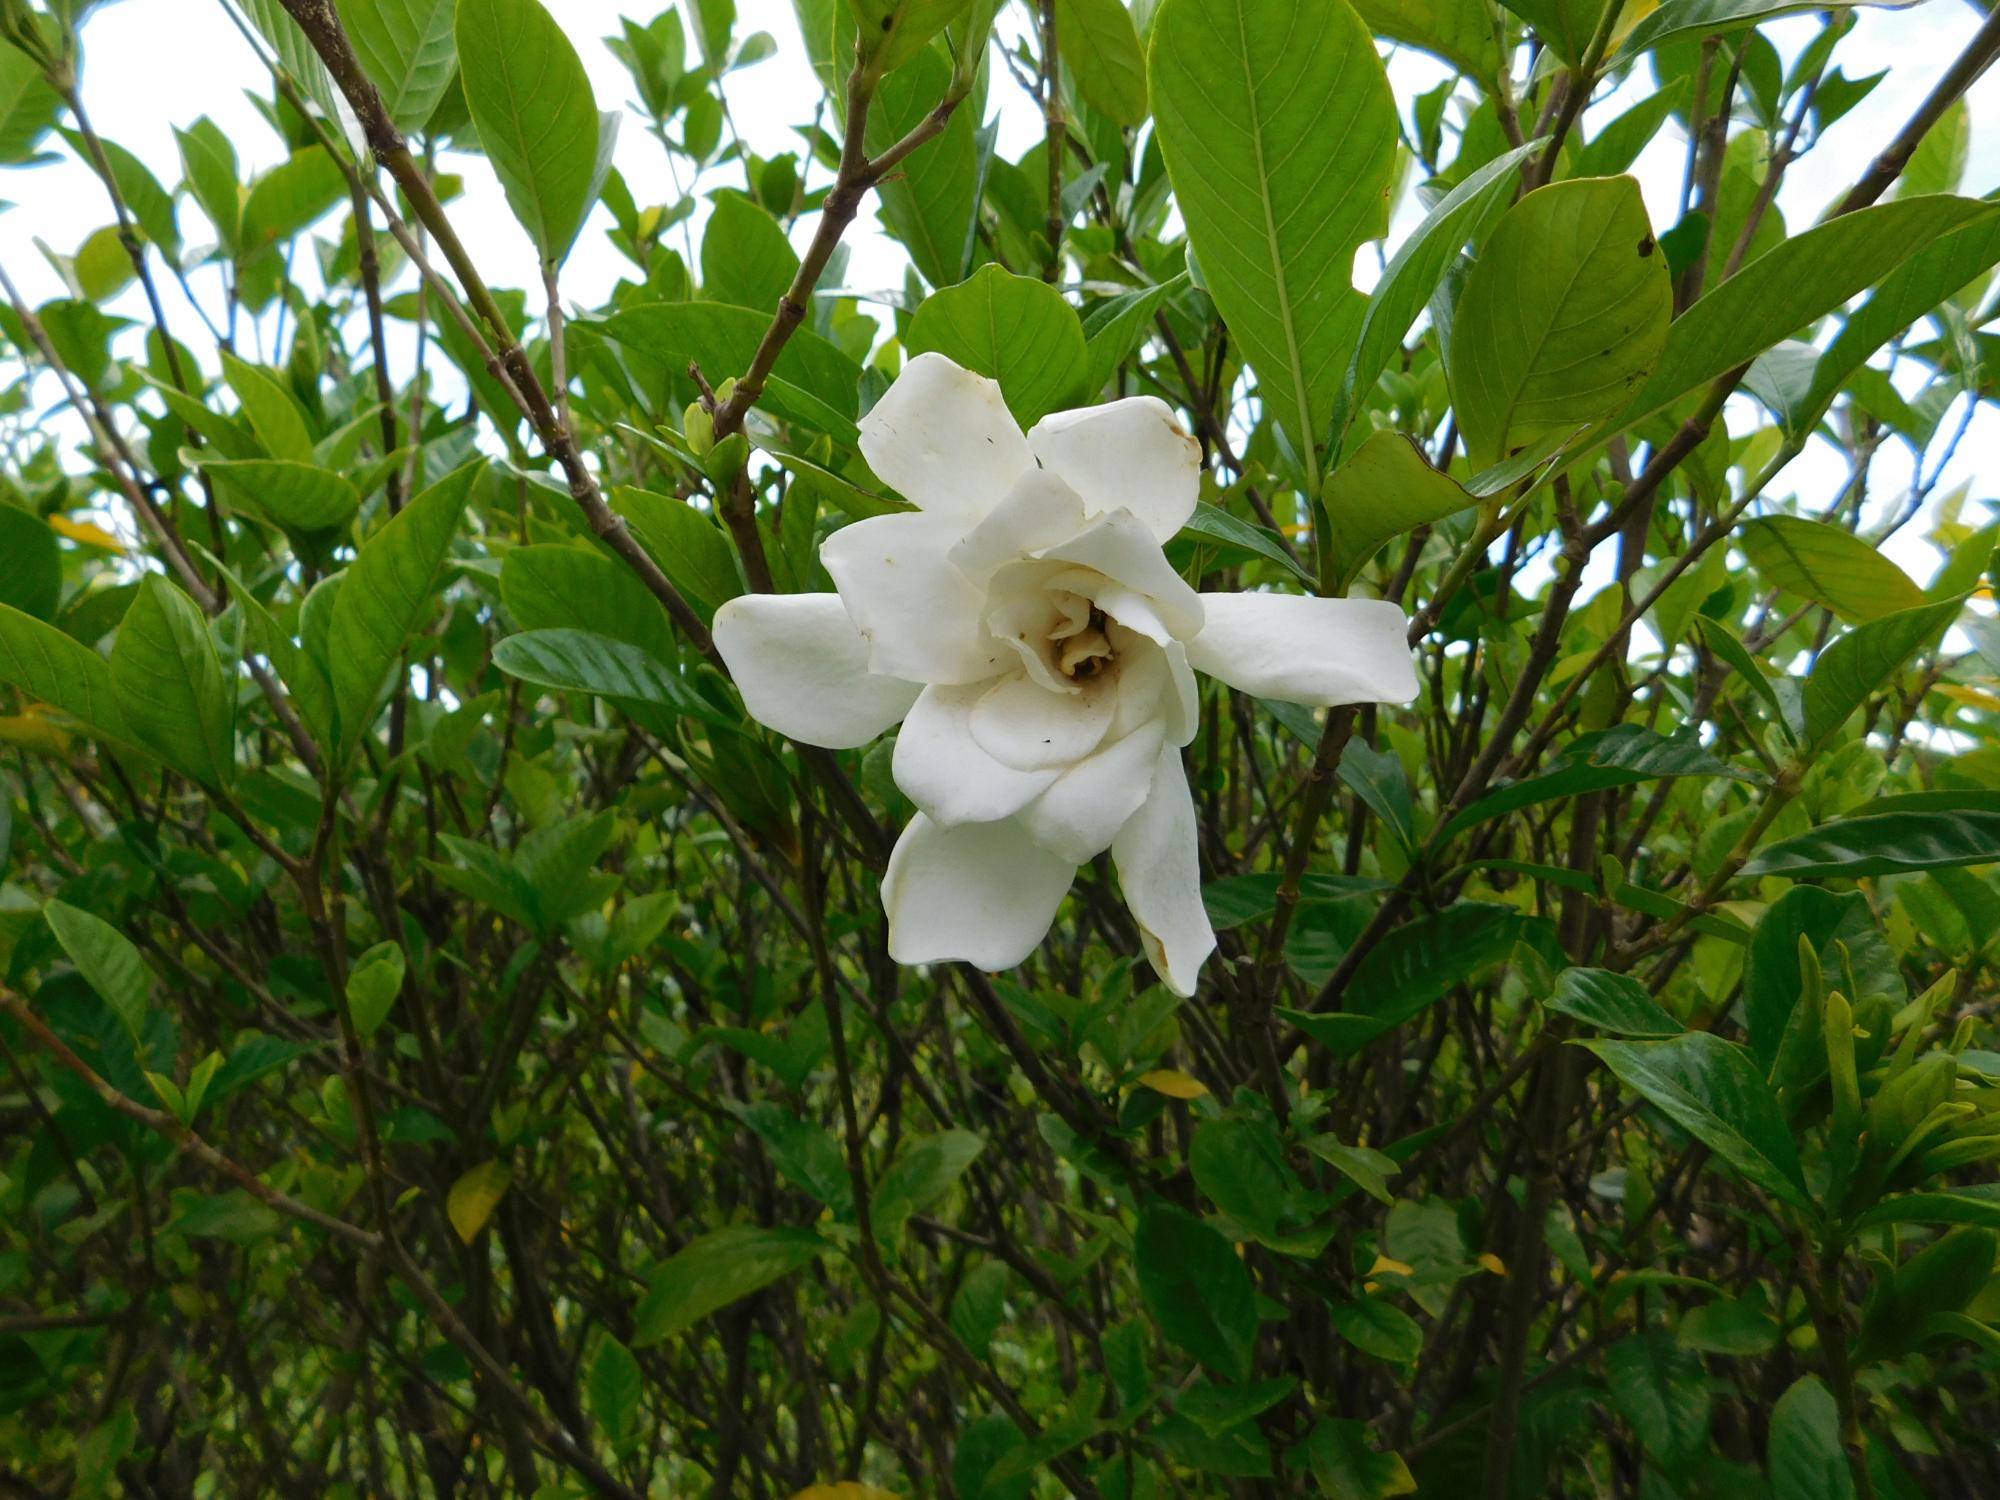 クチナシの白い花です。良い香りがします。(薬草園ほか)